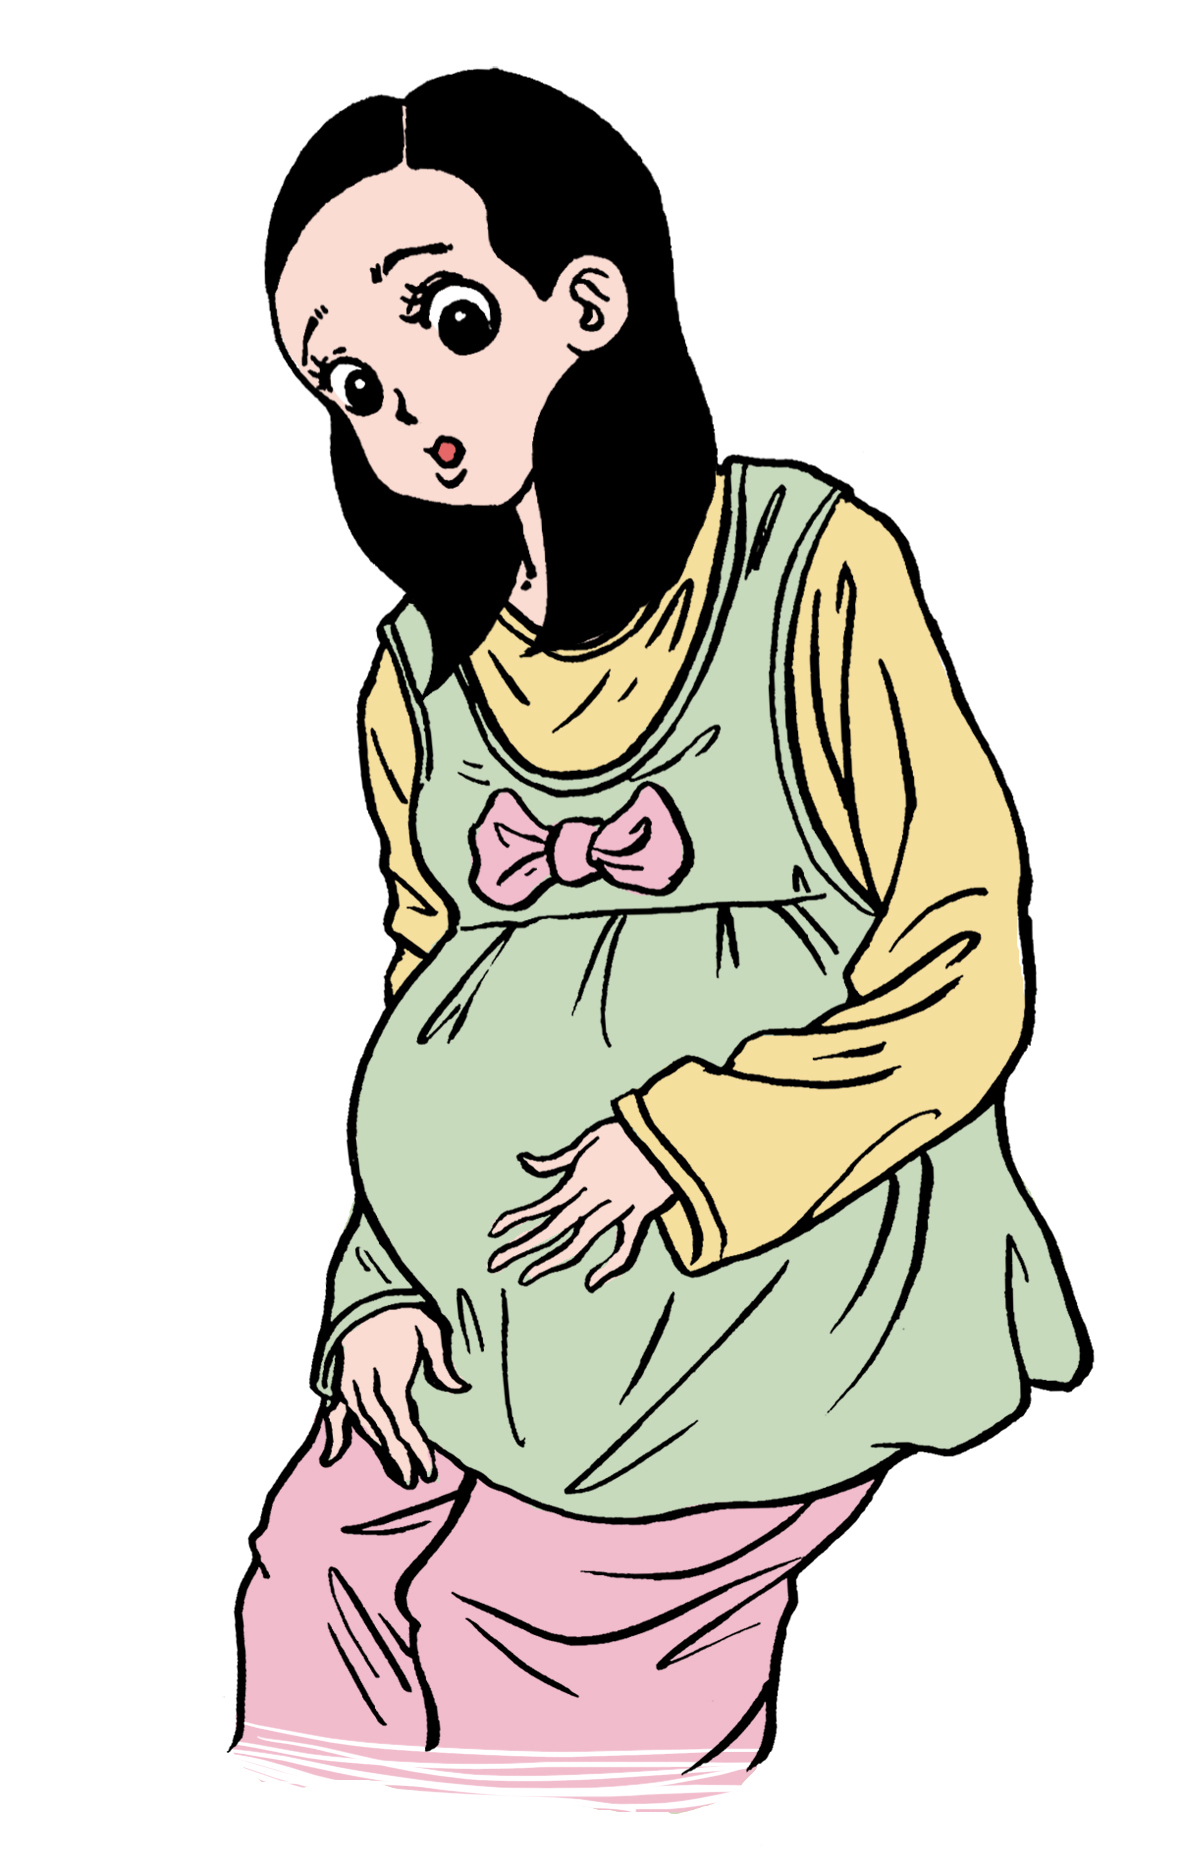 贾强|孕妇被医生建议剖腹产，丈夫以“选日子”为由迟迟不肯签字